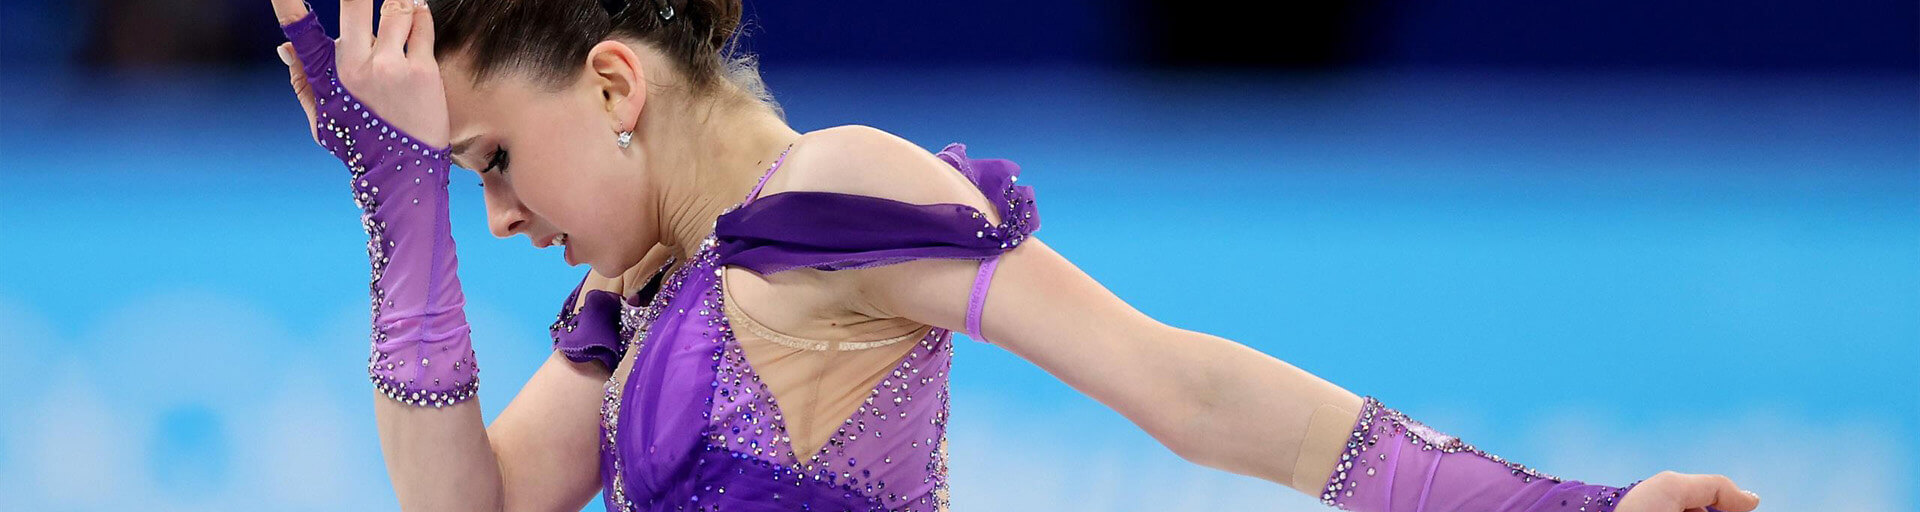 Допинг Валиевой на Олимпиаде: что известно на данный момент